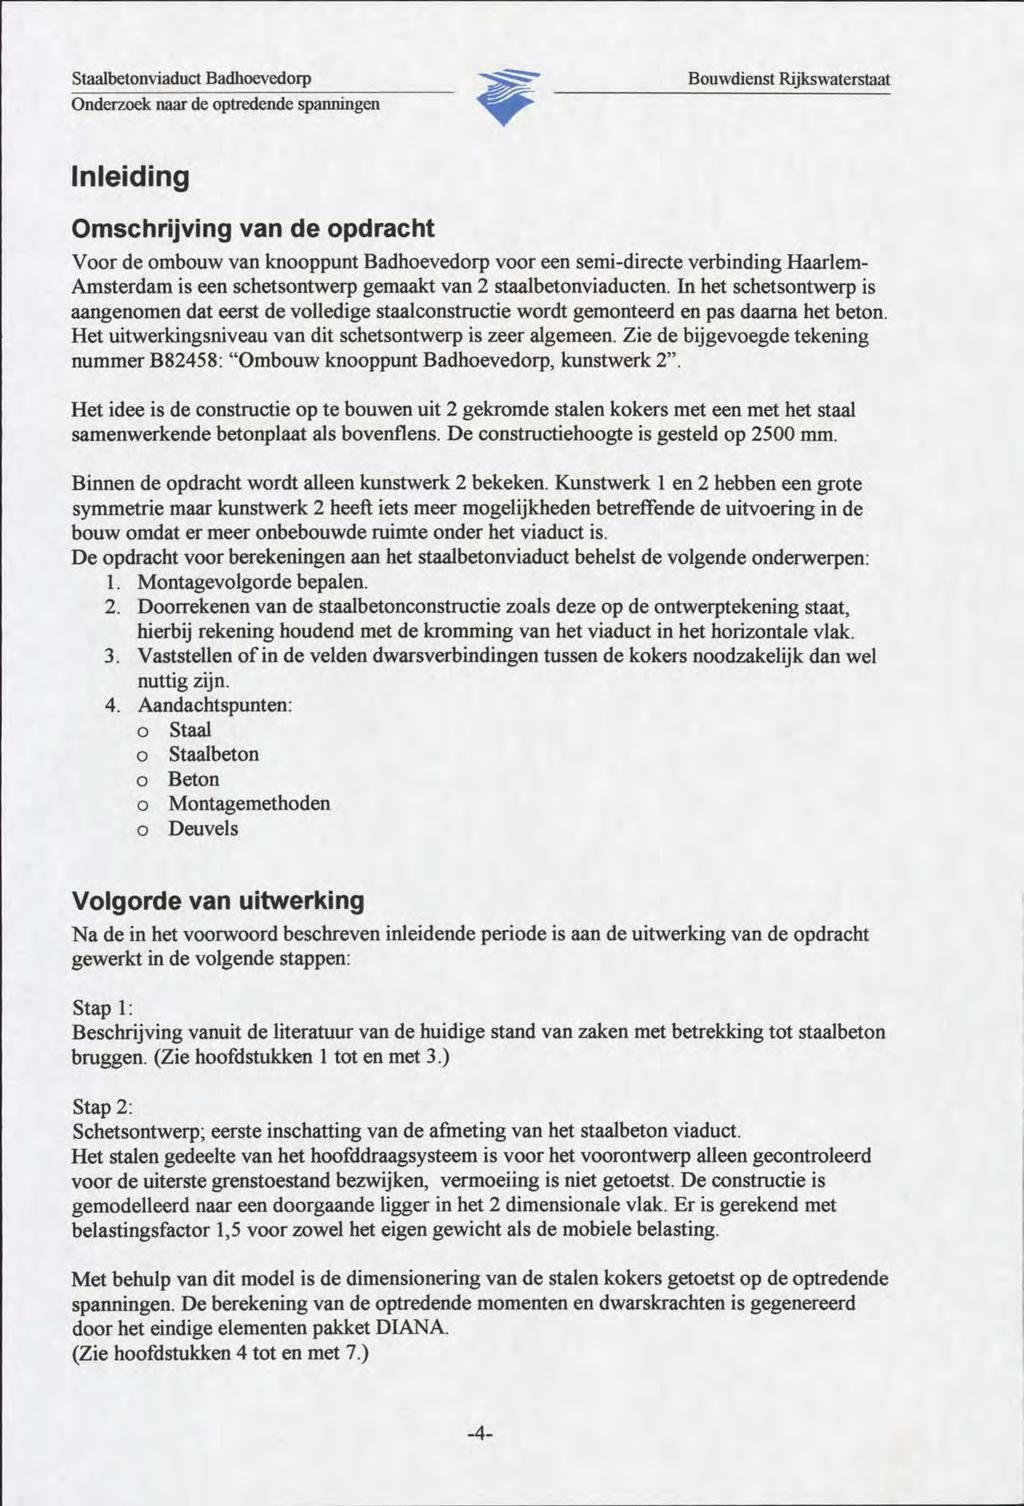 Staalbetonviaduct Badhoevedorp Onderzoek naar de optredende spanningen Inleiding Omschrijving van de opdracht Voor de ombouw van knooppunt Badhoevedorp voor een semi-directe verbinding Haarlem-